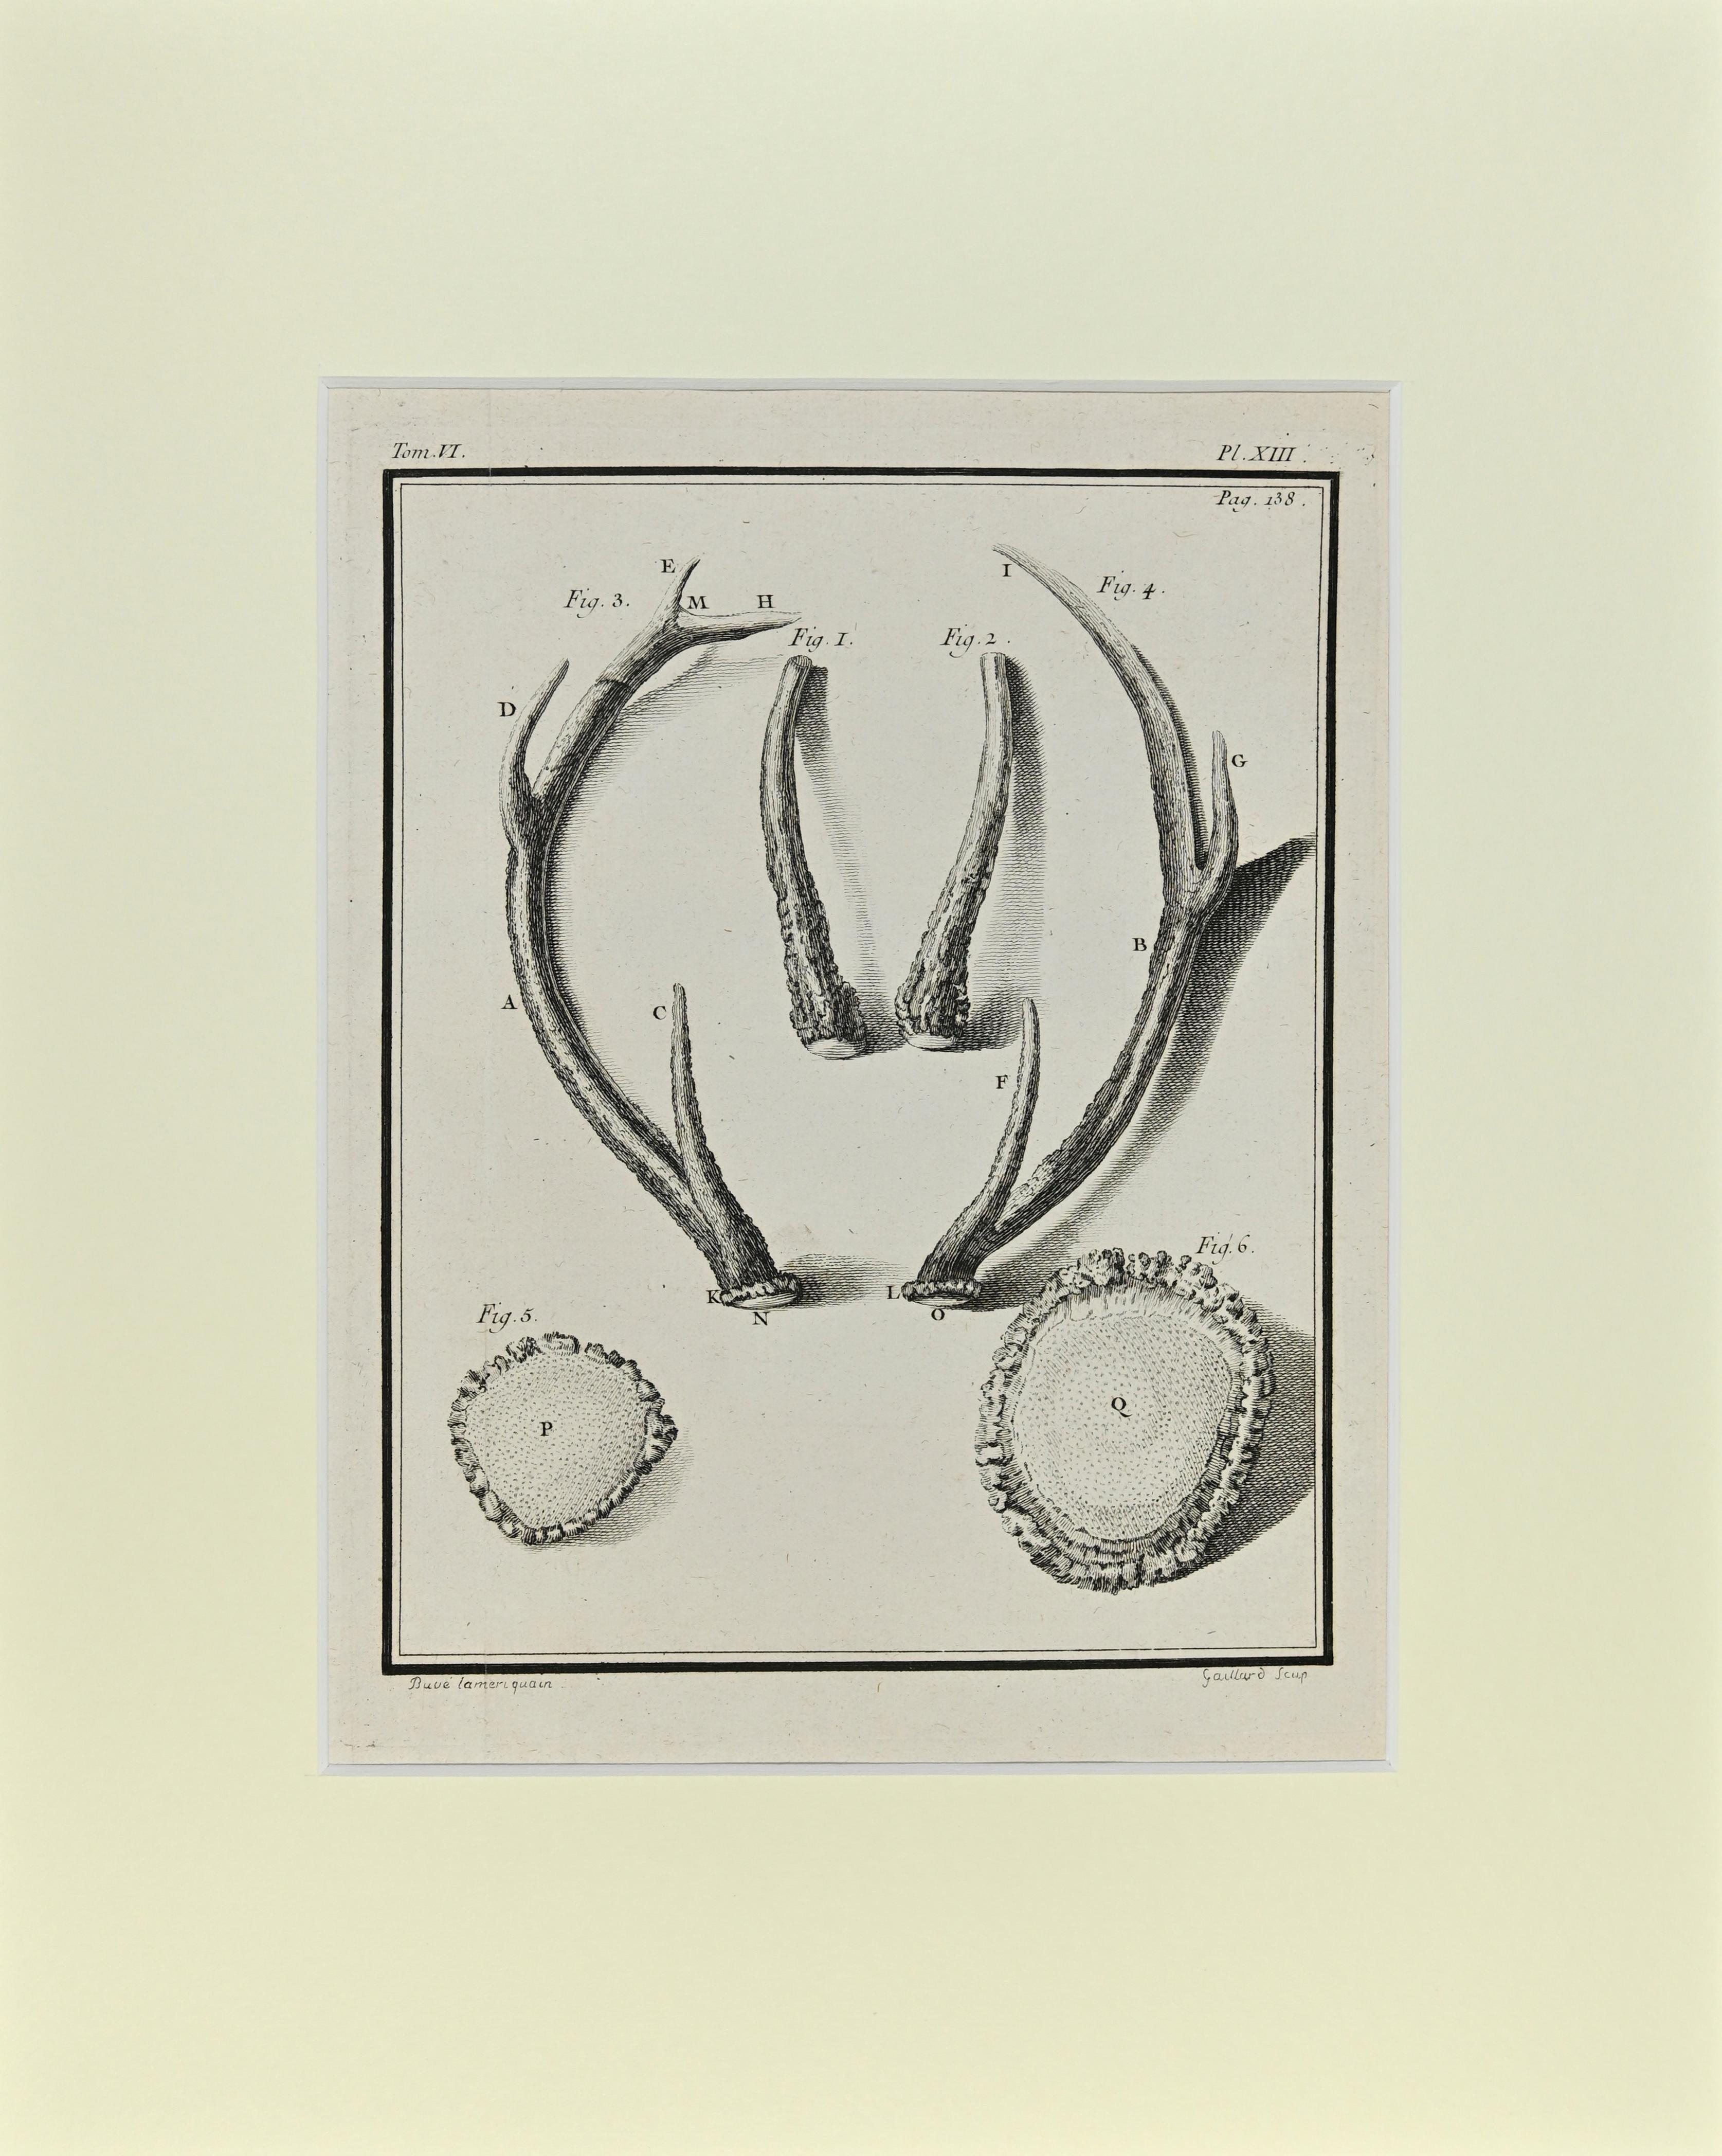 Hirschhörner ist ein Kunstwerk von Buvée l'Américain aus dem Jahr 1771.  

Radierung B./W. Druck auf Elfenbeinpapier. Signiert auf der Platte am unteren linken Rand.

Das Werk ist auf Karton geklebt. Abmessungen insgesamt: 35x28 cm.

Das Kunstwerk